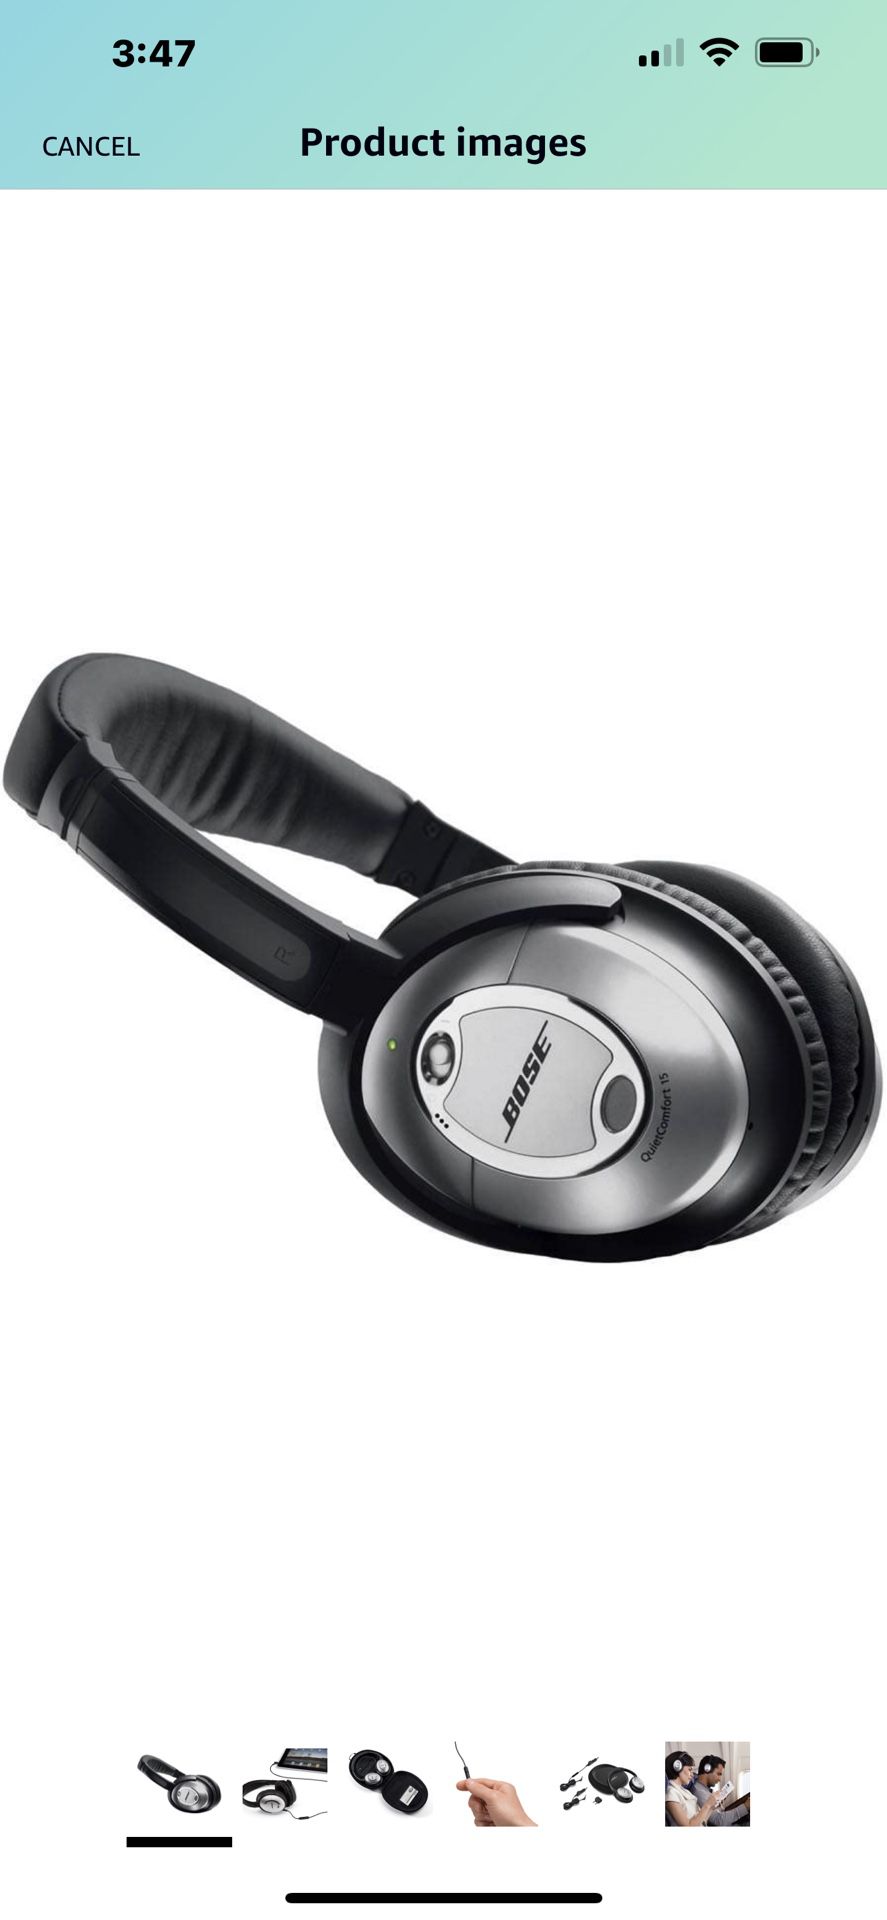 Bose Quiet Comfort 15 Headphones